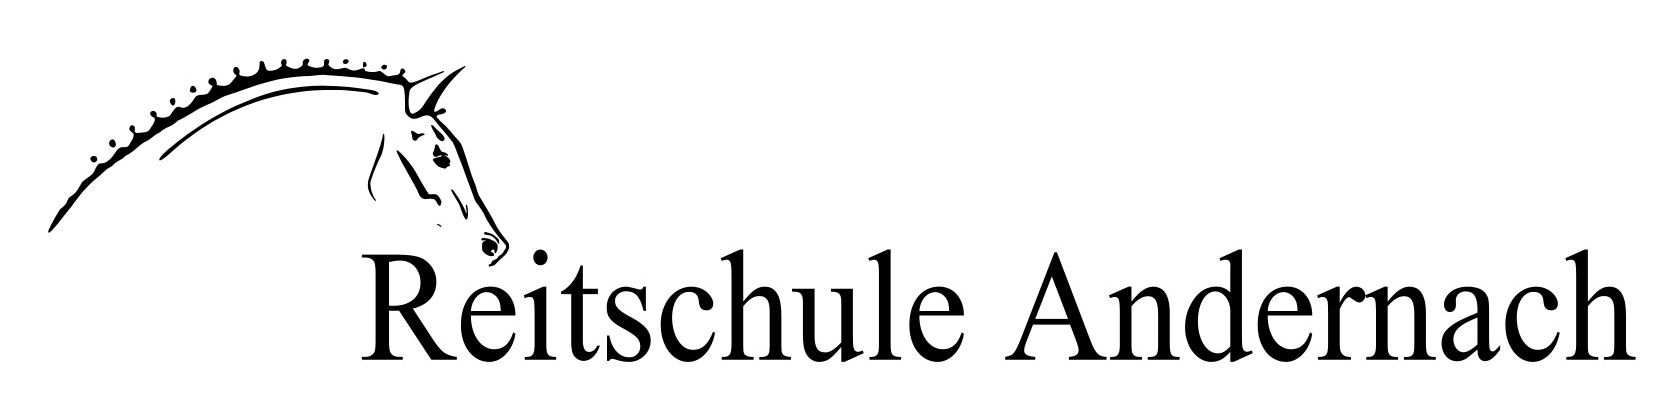 Reitschule Andernach Logo bearbeitet